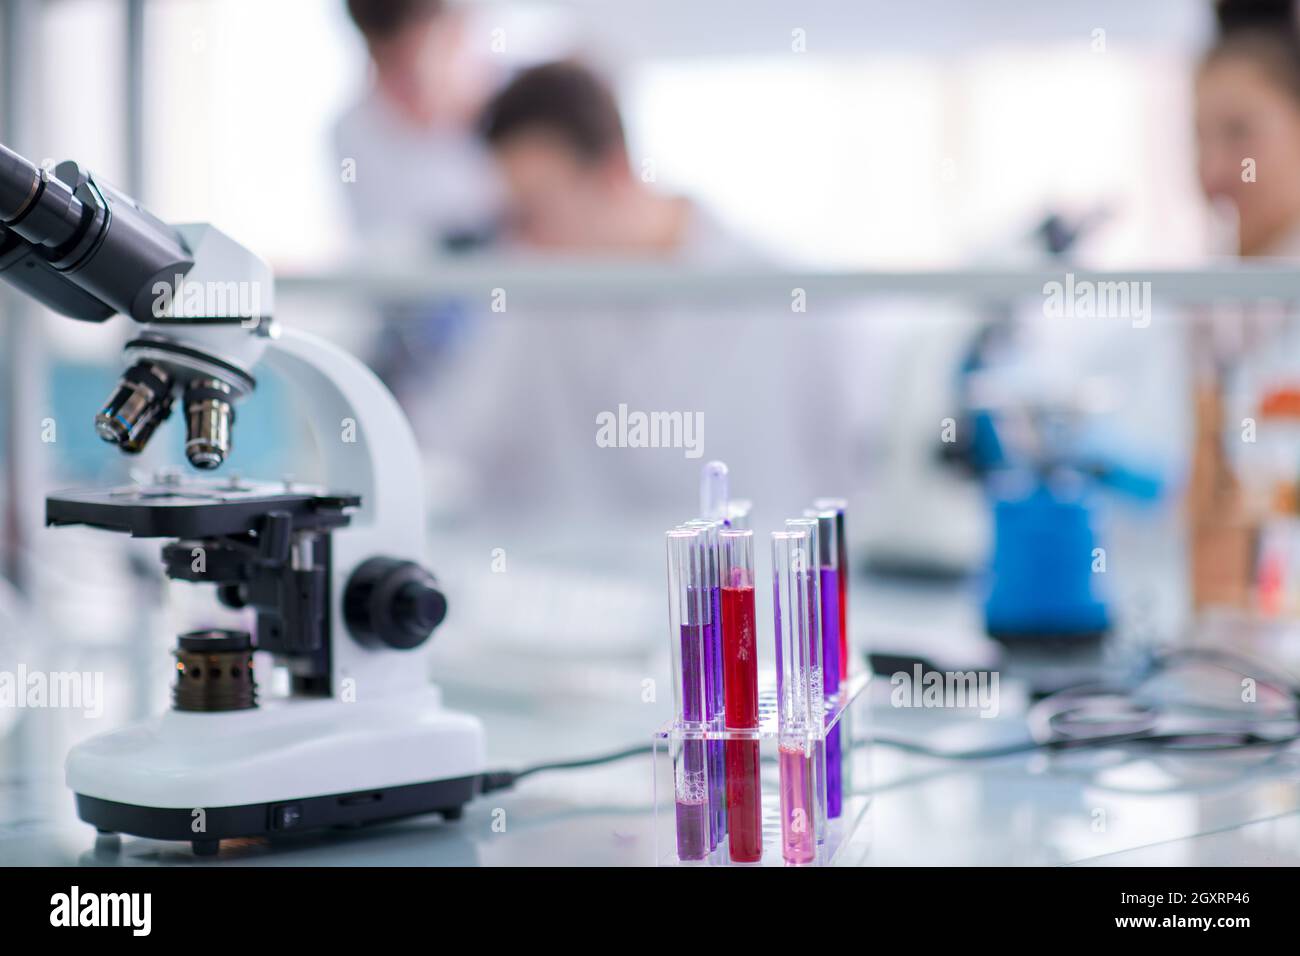 Microscopio sul luogo di lavoro nei pressi di provette con liquido diverso. Assistenza sanitaria e il concetto di biotecnologia Foto Stock